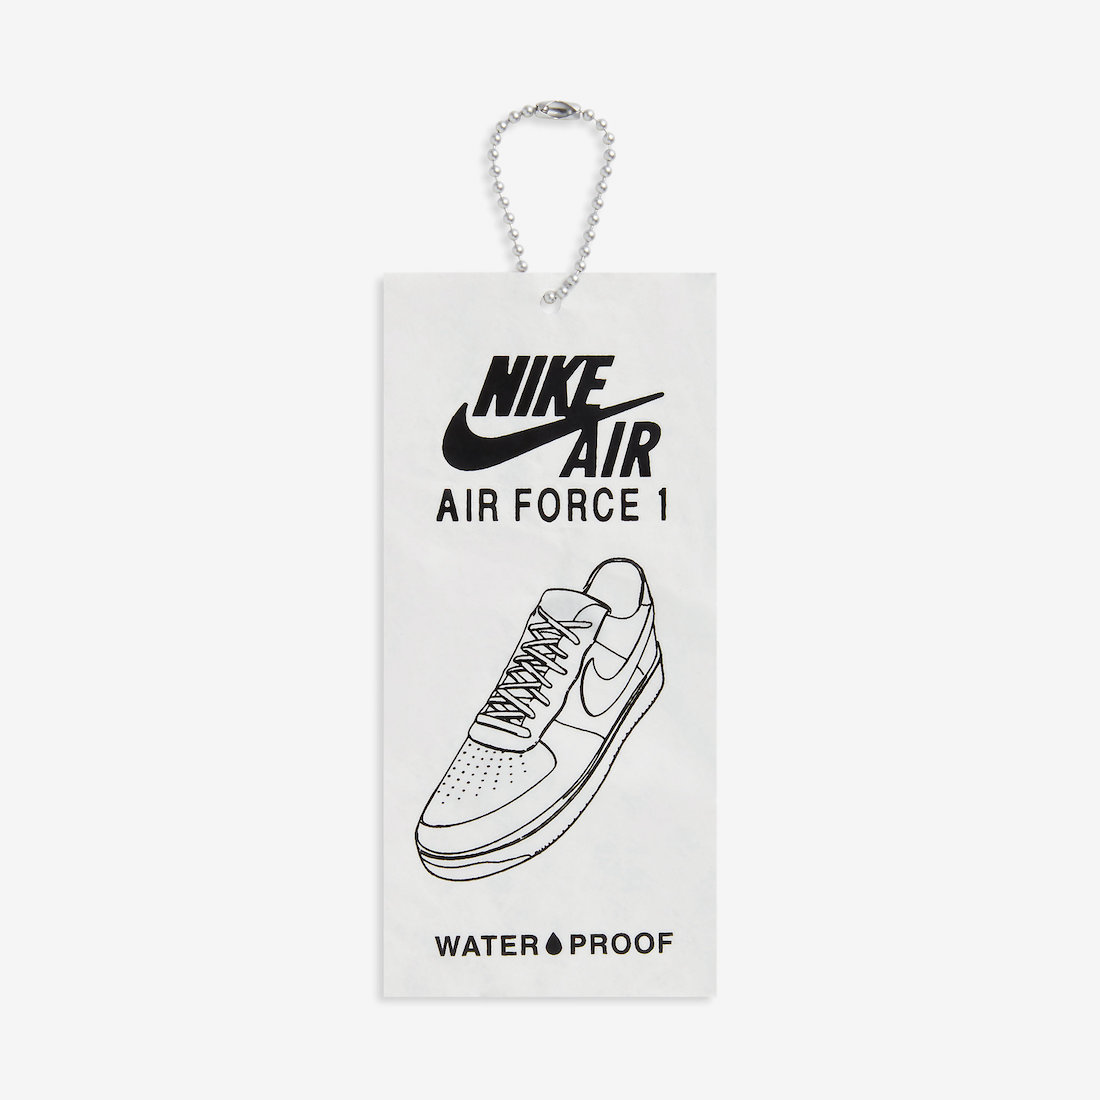 Nike Air Force 1 Low, Nike Air Force 1, Nike Air, NIKE, Air Force 1 Low, Air Force 1